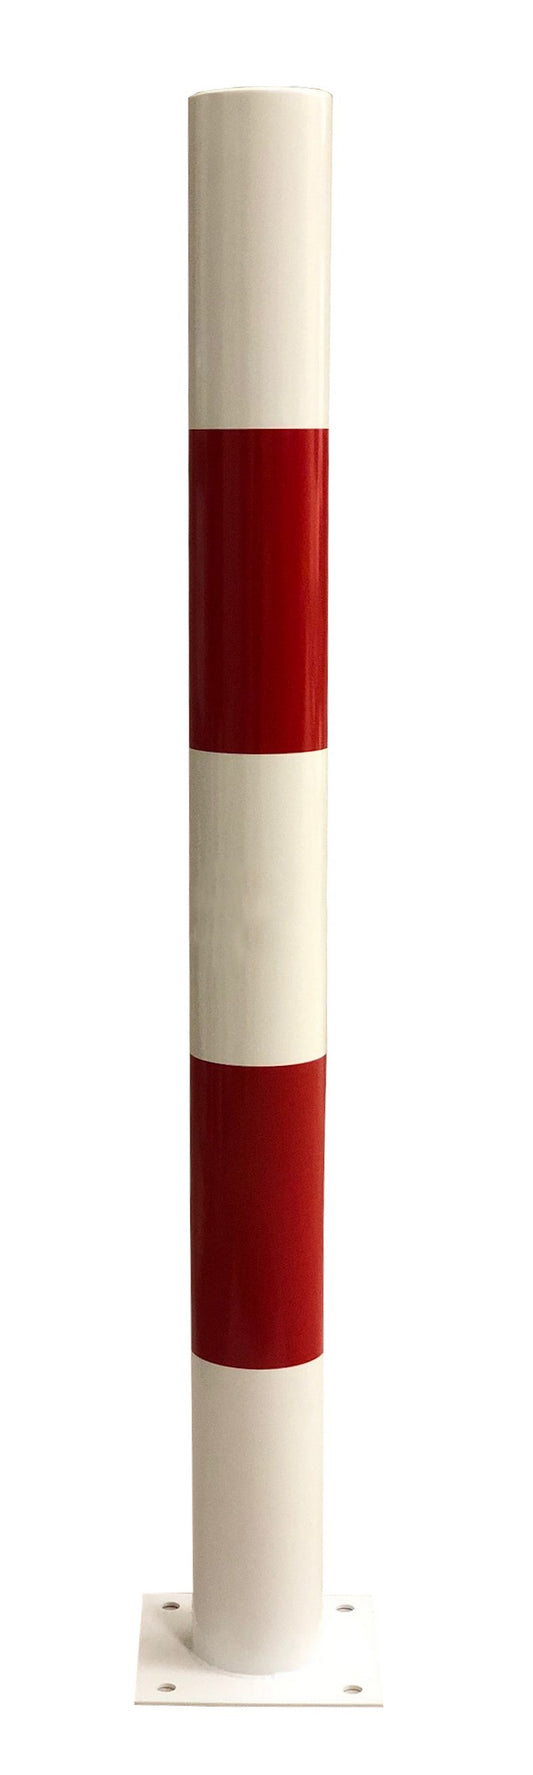 Słupek ochronny stalowy biały z czerwonymi pasami (wys. 1000 mm)